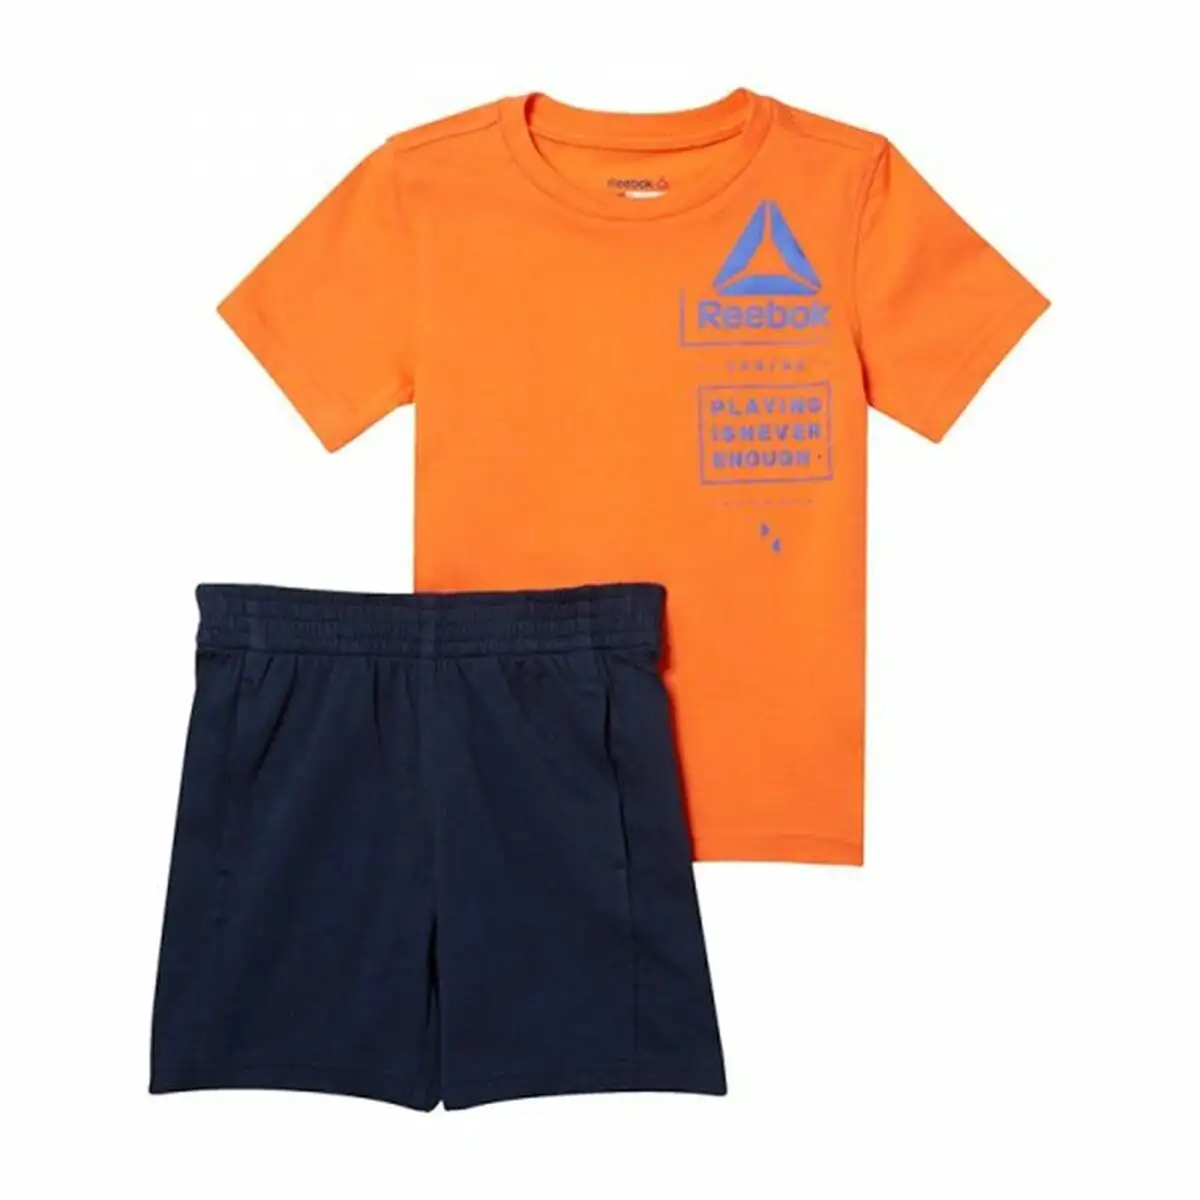 Ensemble de sport pour enfants reebok essentials orange_4096. DIAYTAR SENEGAL - Là où l'Élégance Devient un Mode de Vie. Naviguez à travers notre gamme et choisissez des produits qui apportent une touche raffinée à votre quotidien.